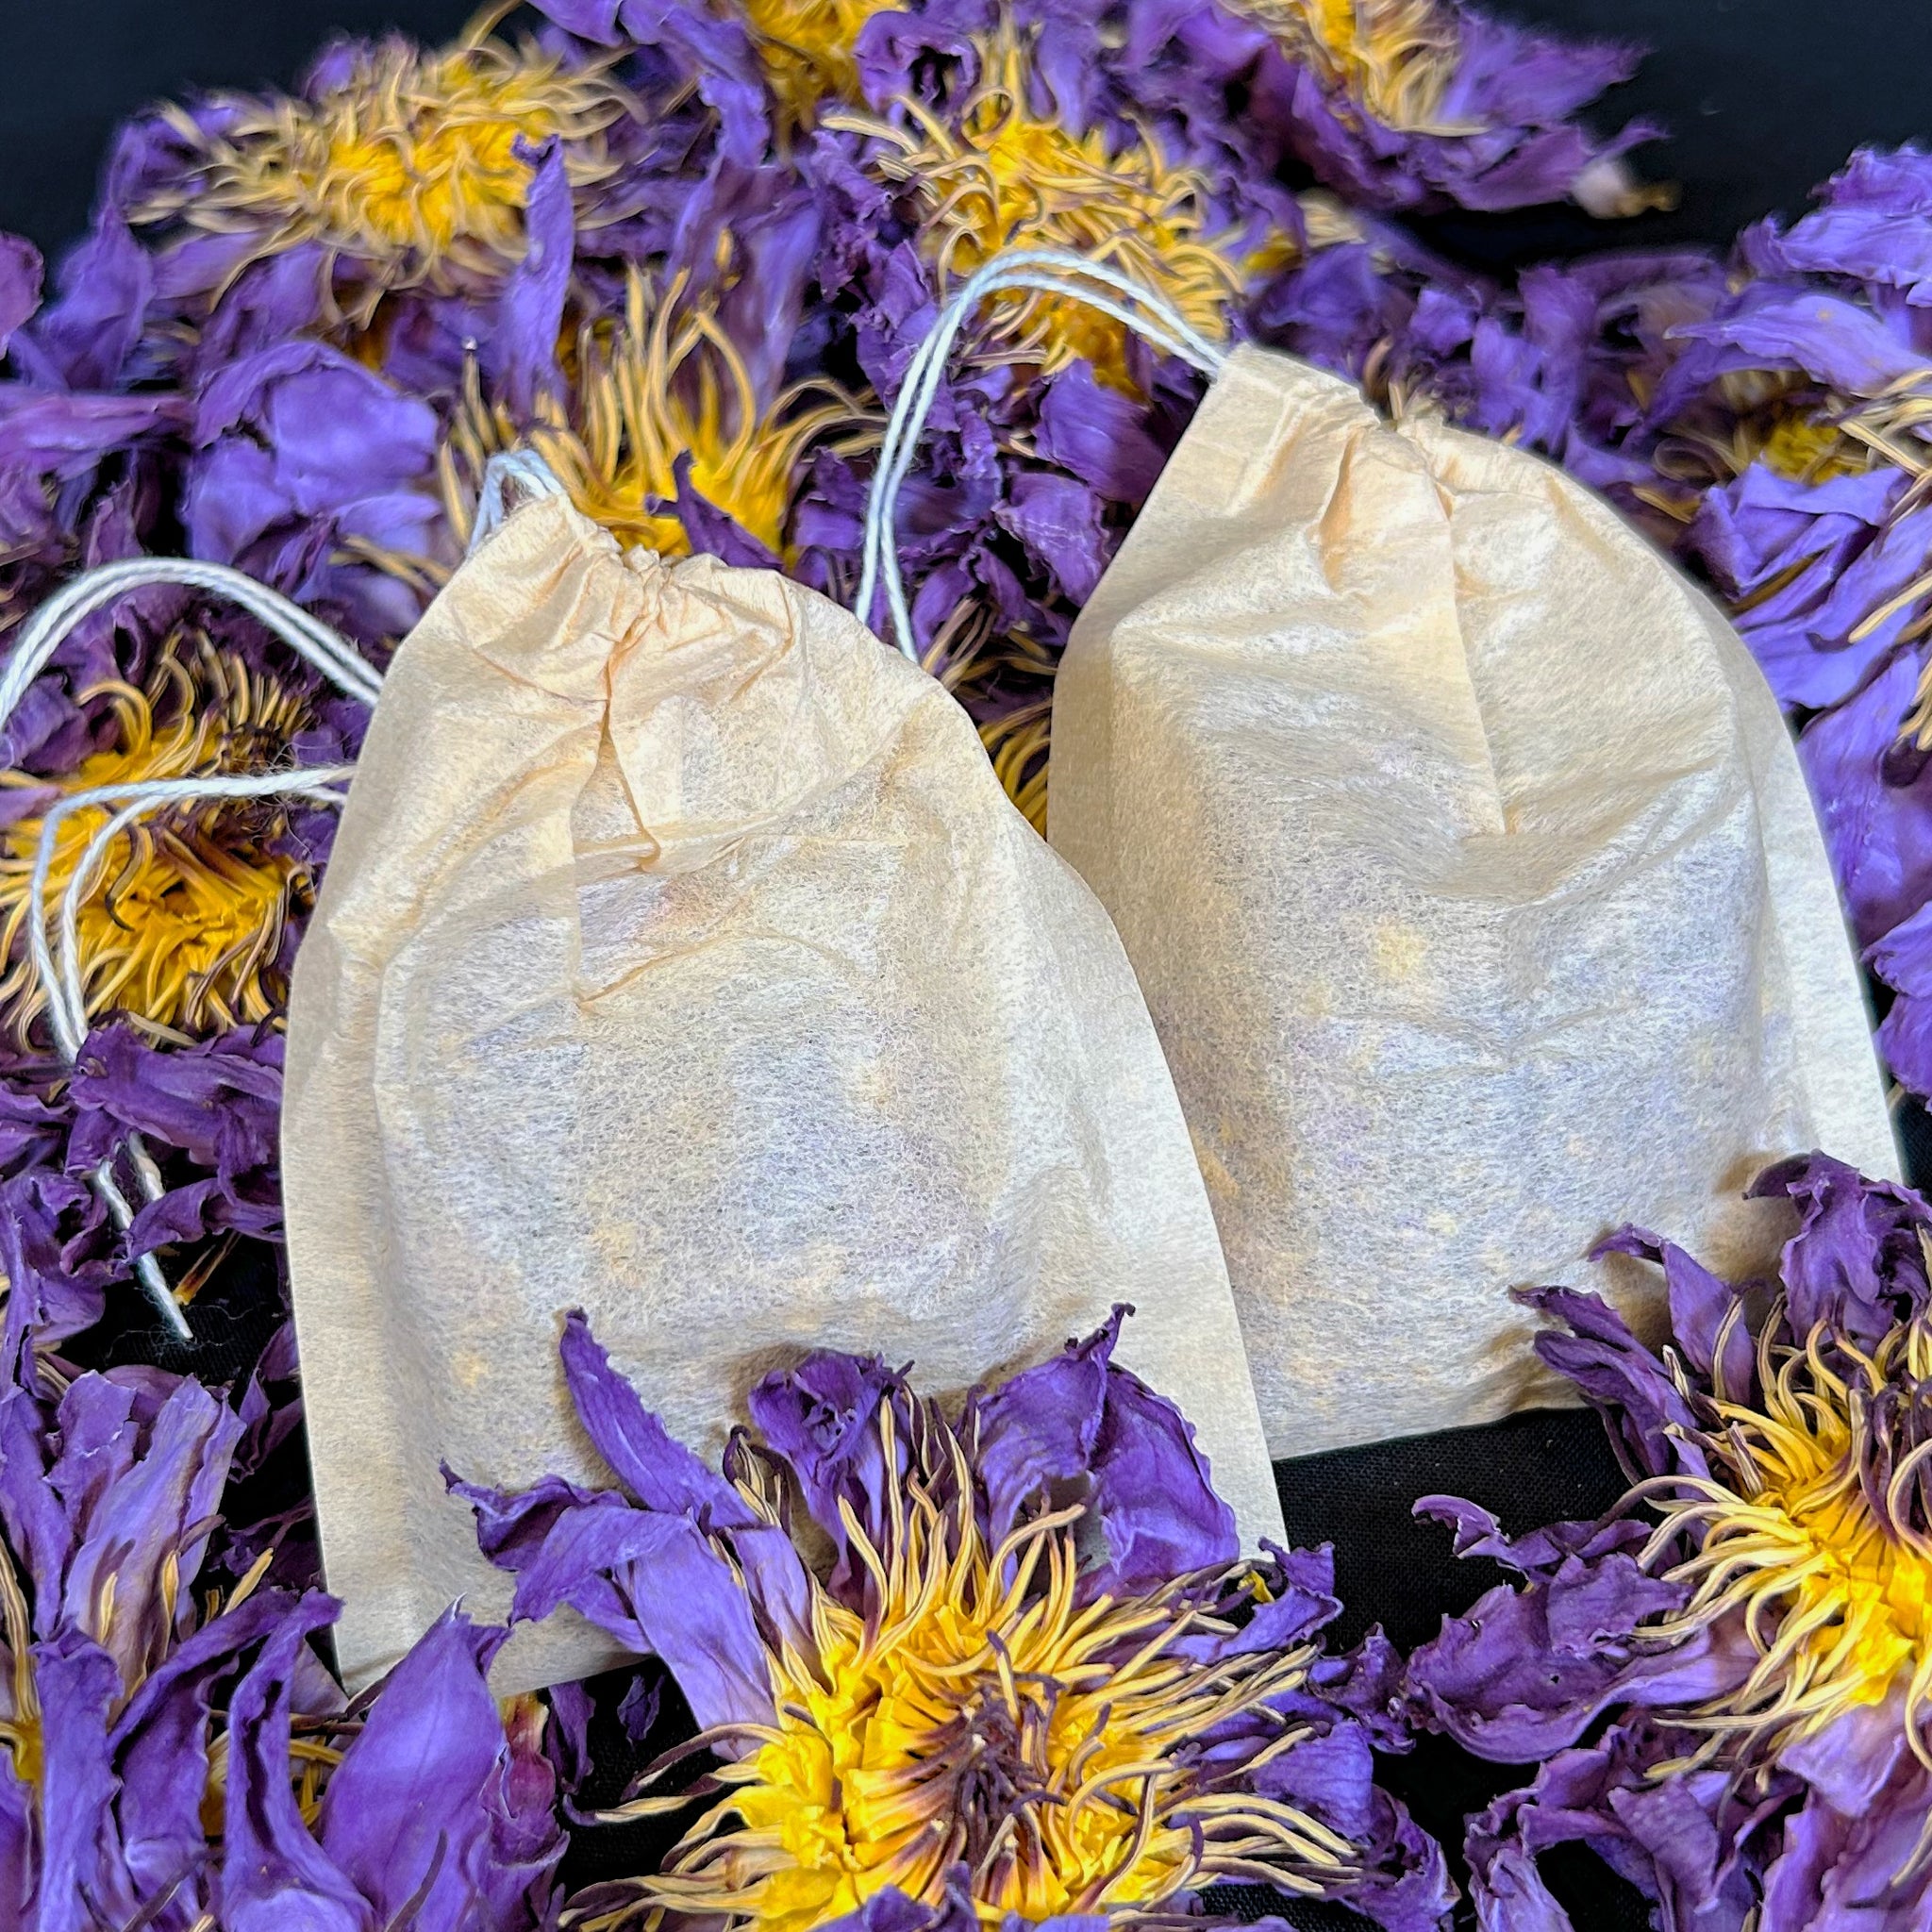 Blue Lotus Flower Tea bags